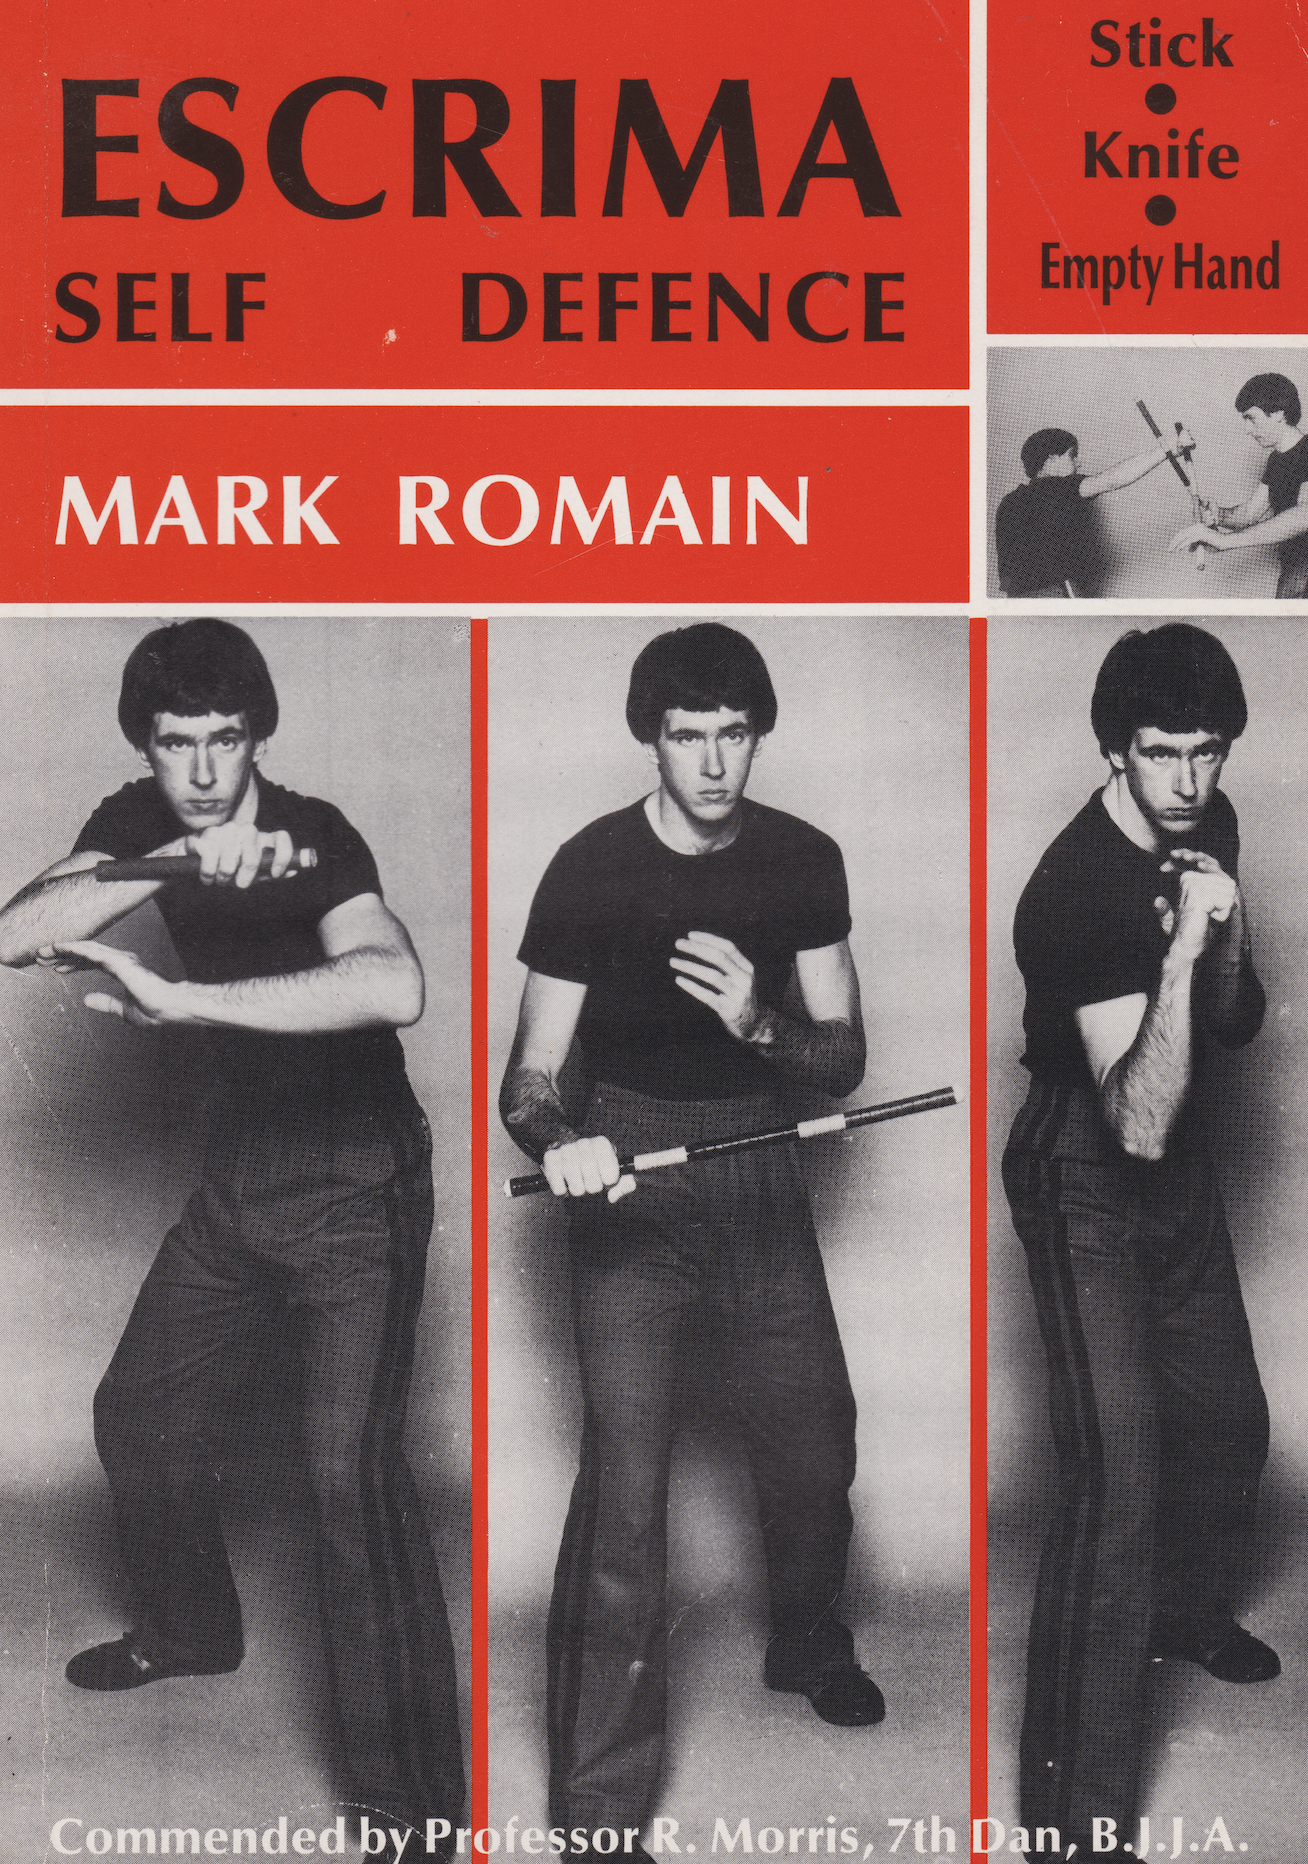 Libro de autodefensa Escrima de Mark Romain (usado)